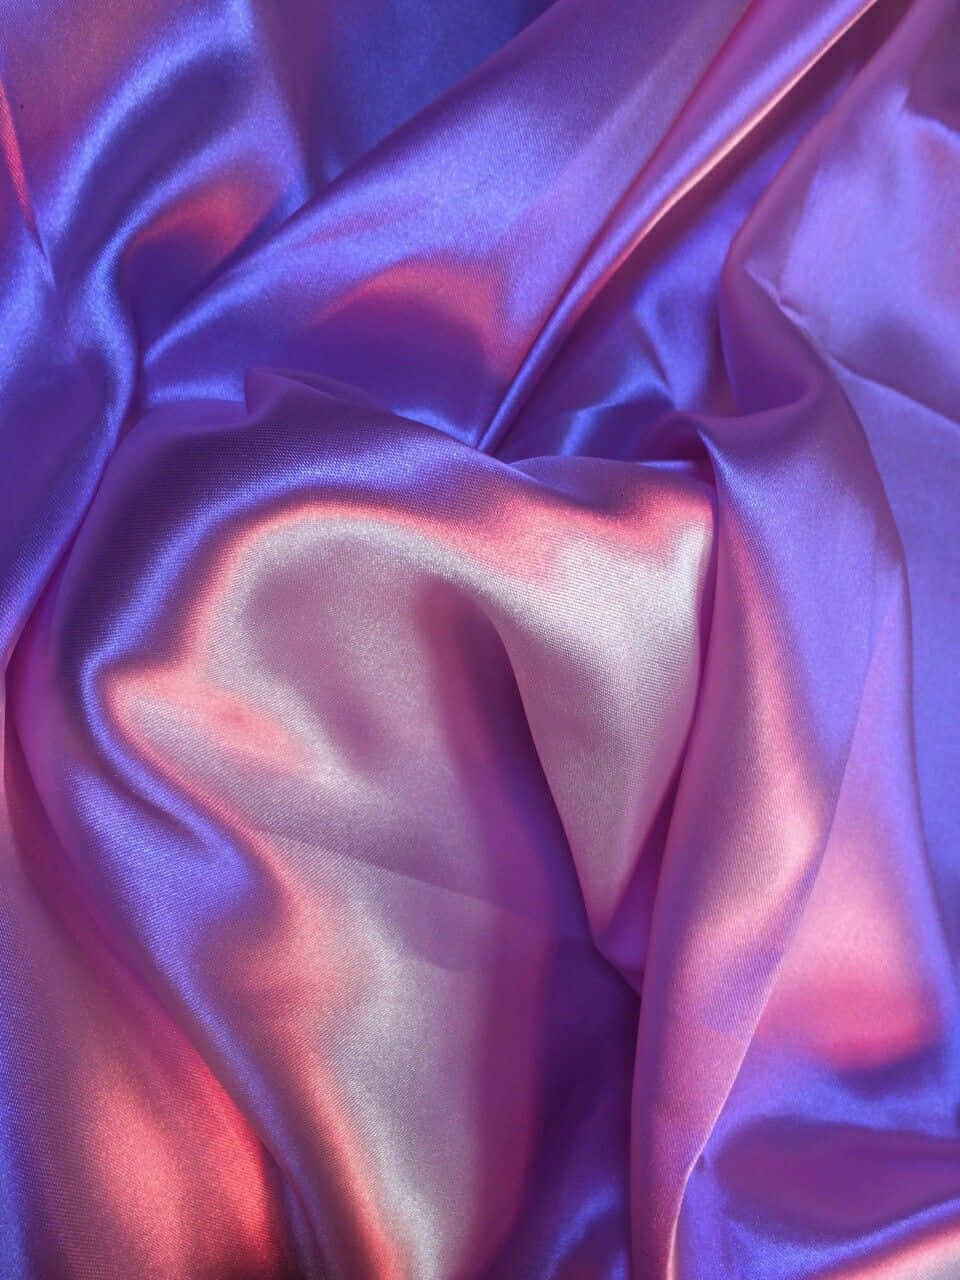 Luxurious Purple Silk Fabric Flowing In Wind Wallpaper